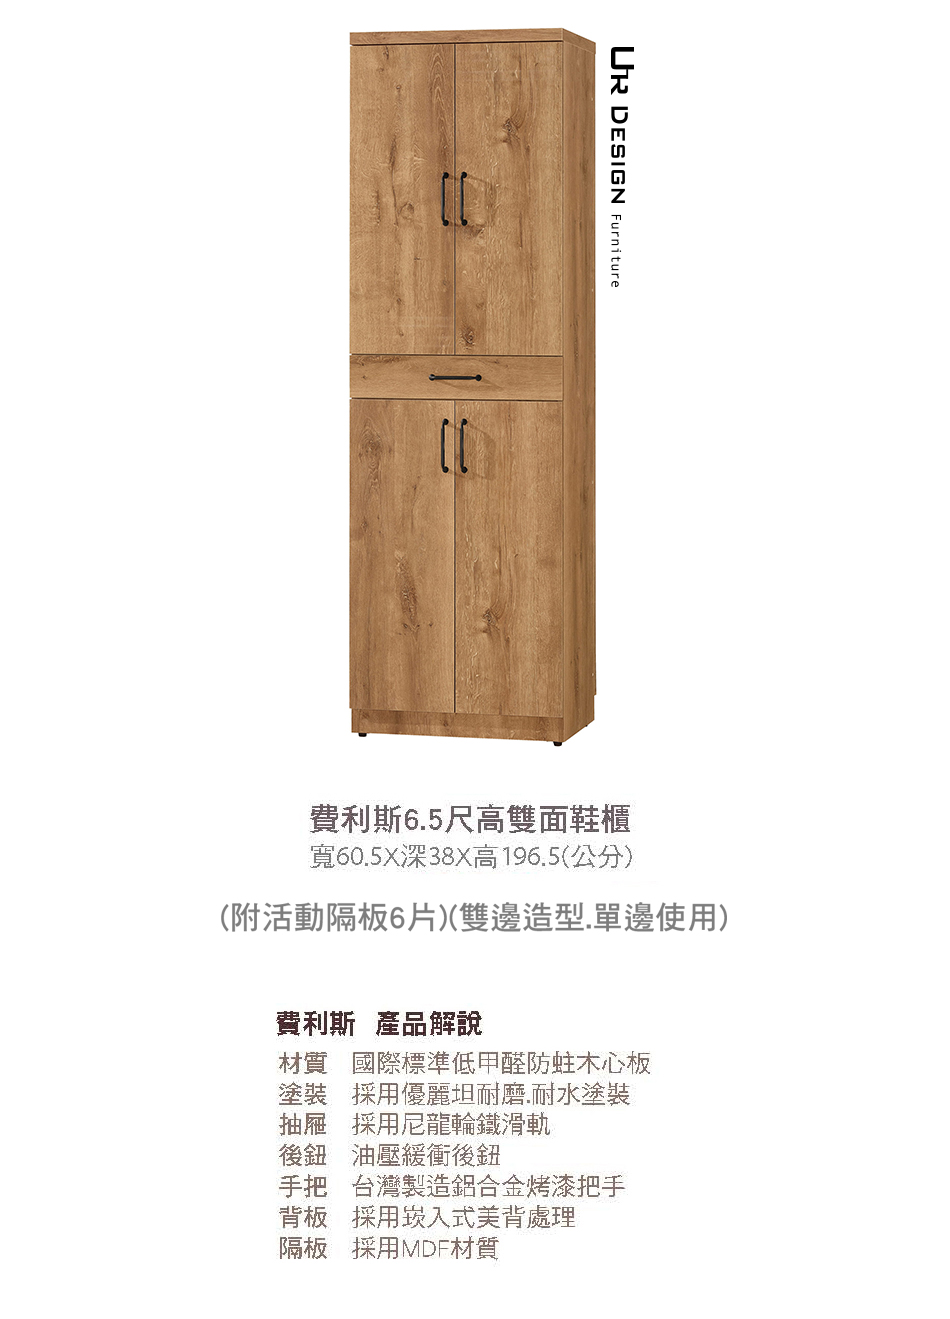 日式費利斯6.5尺高雙面鞋櫃